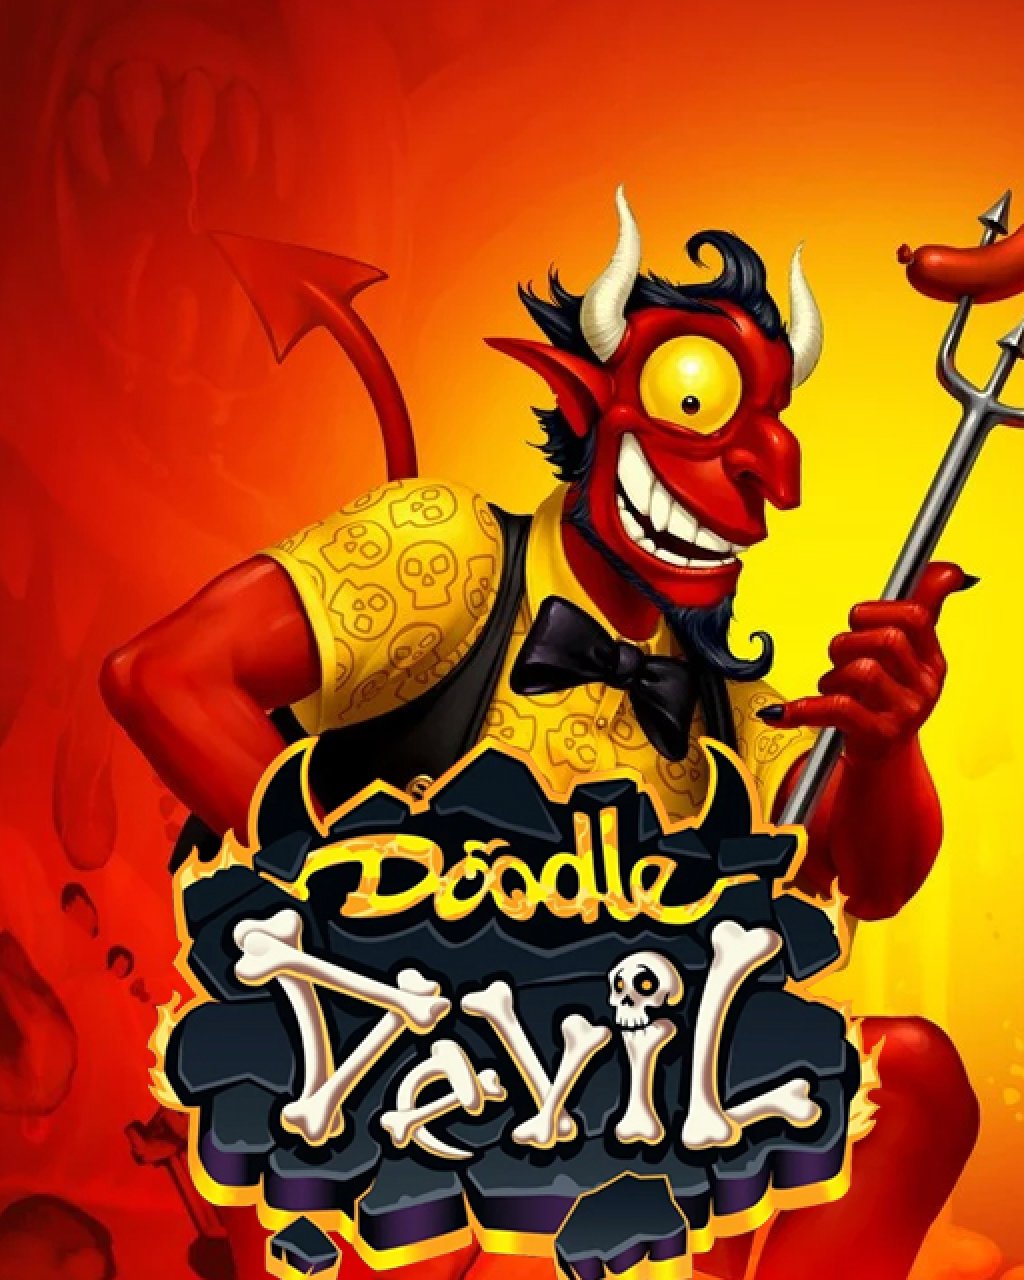 Doodle Devil